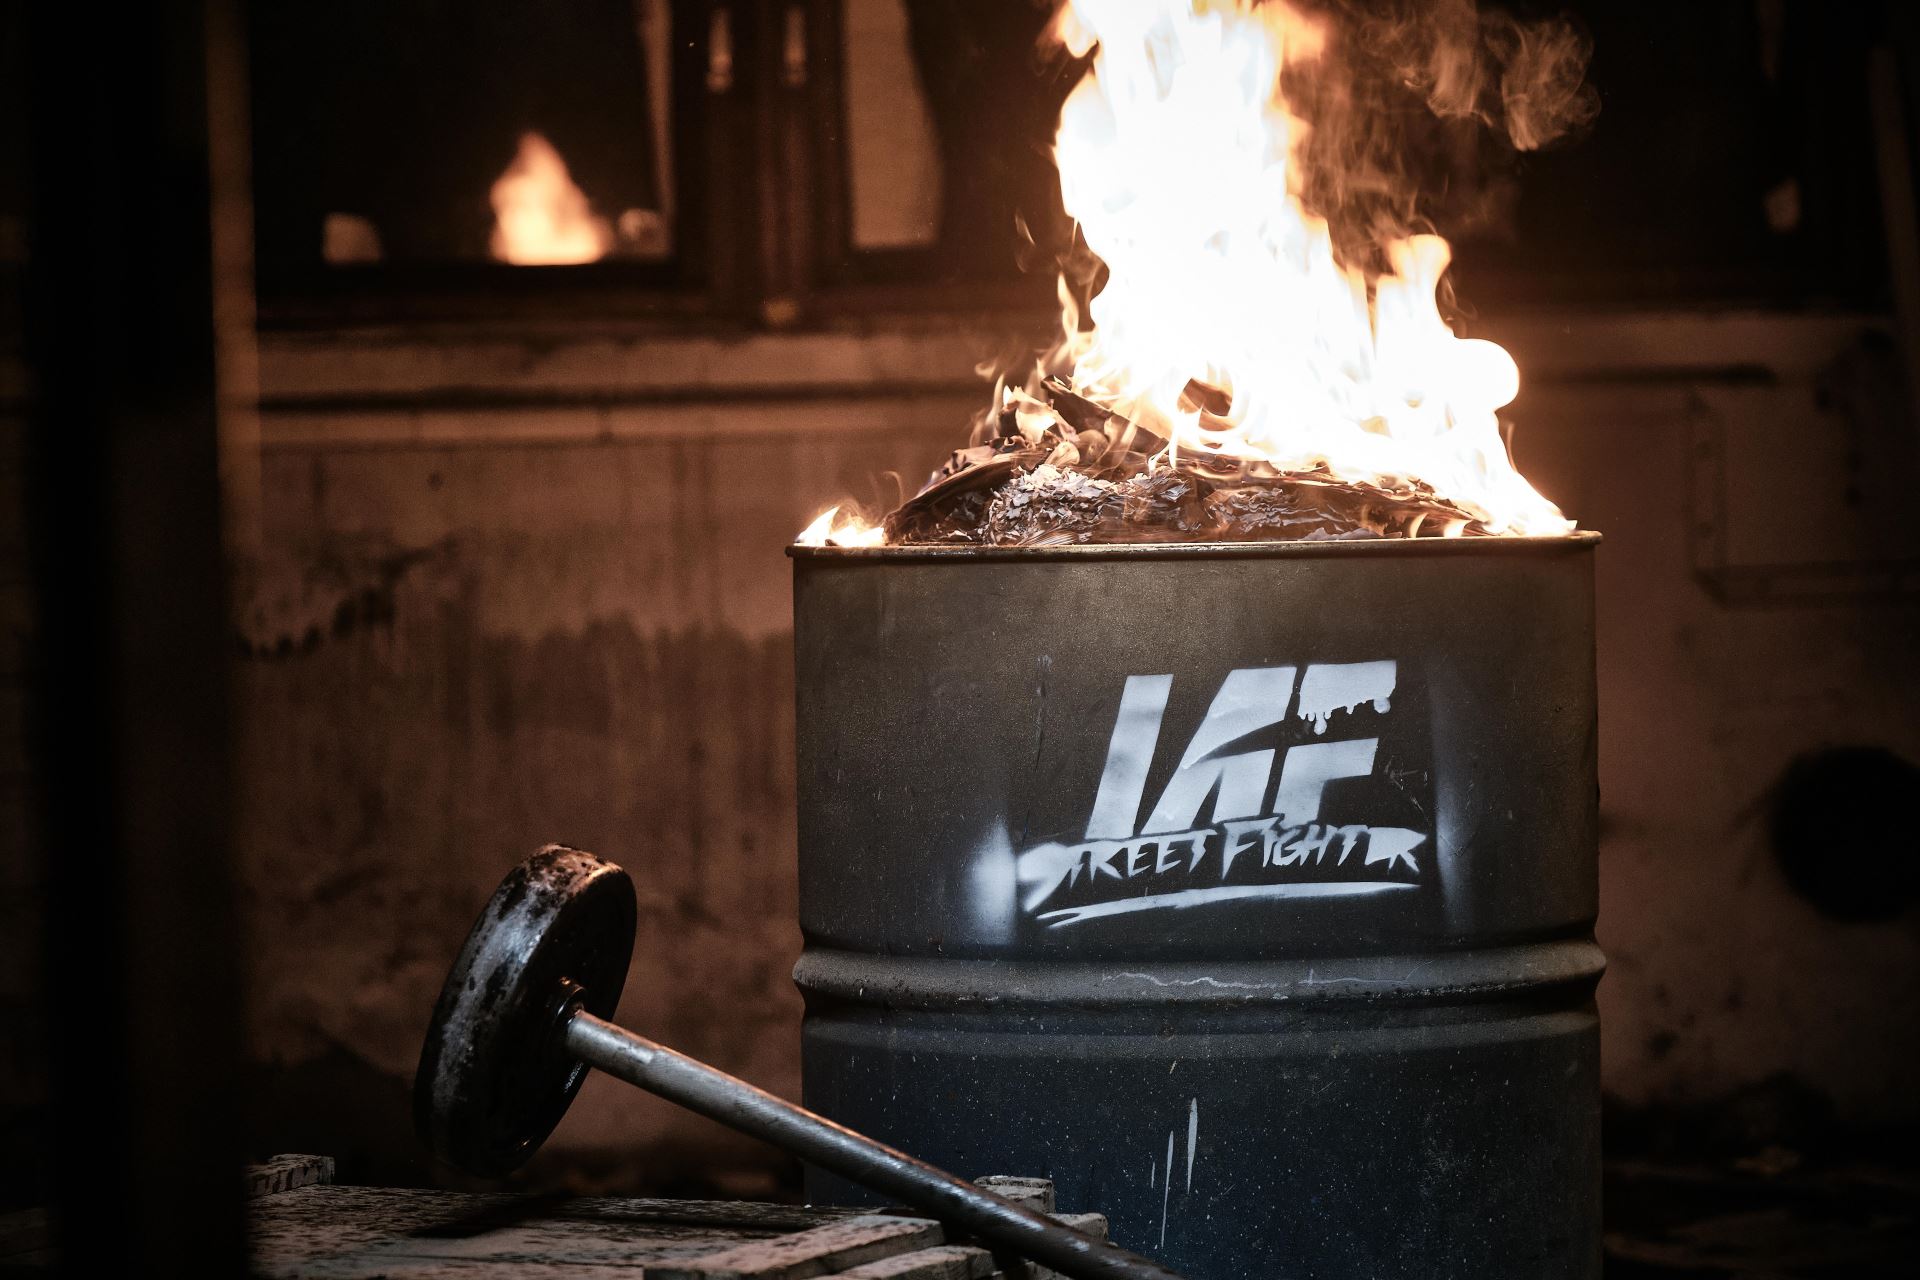 Organizace IAF přesune MMA bitvy do garáže. Žádná klec ani ring